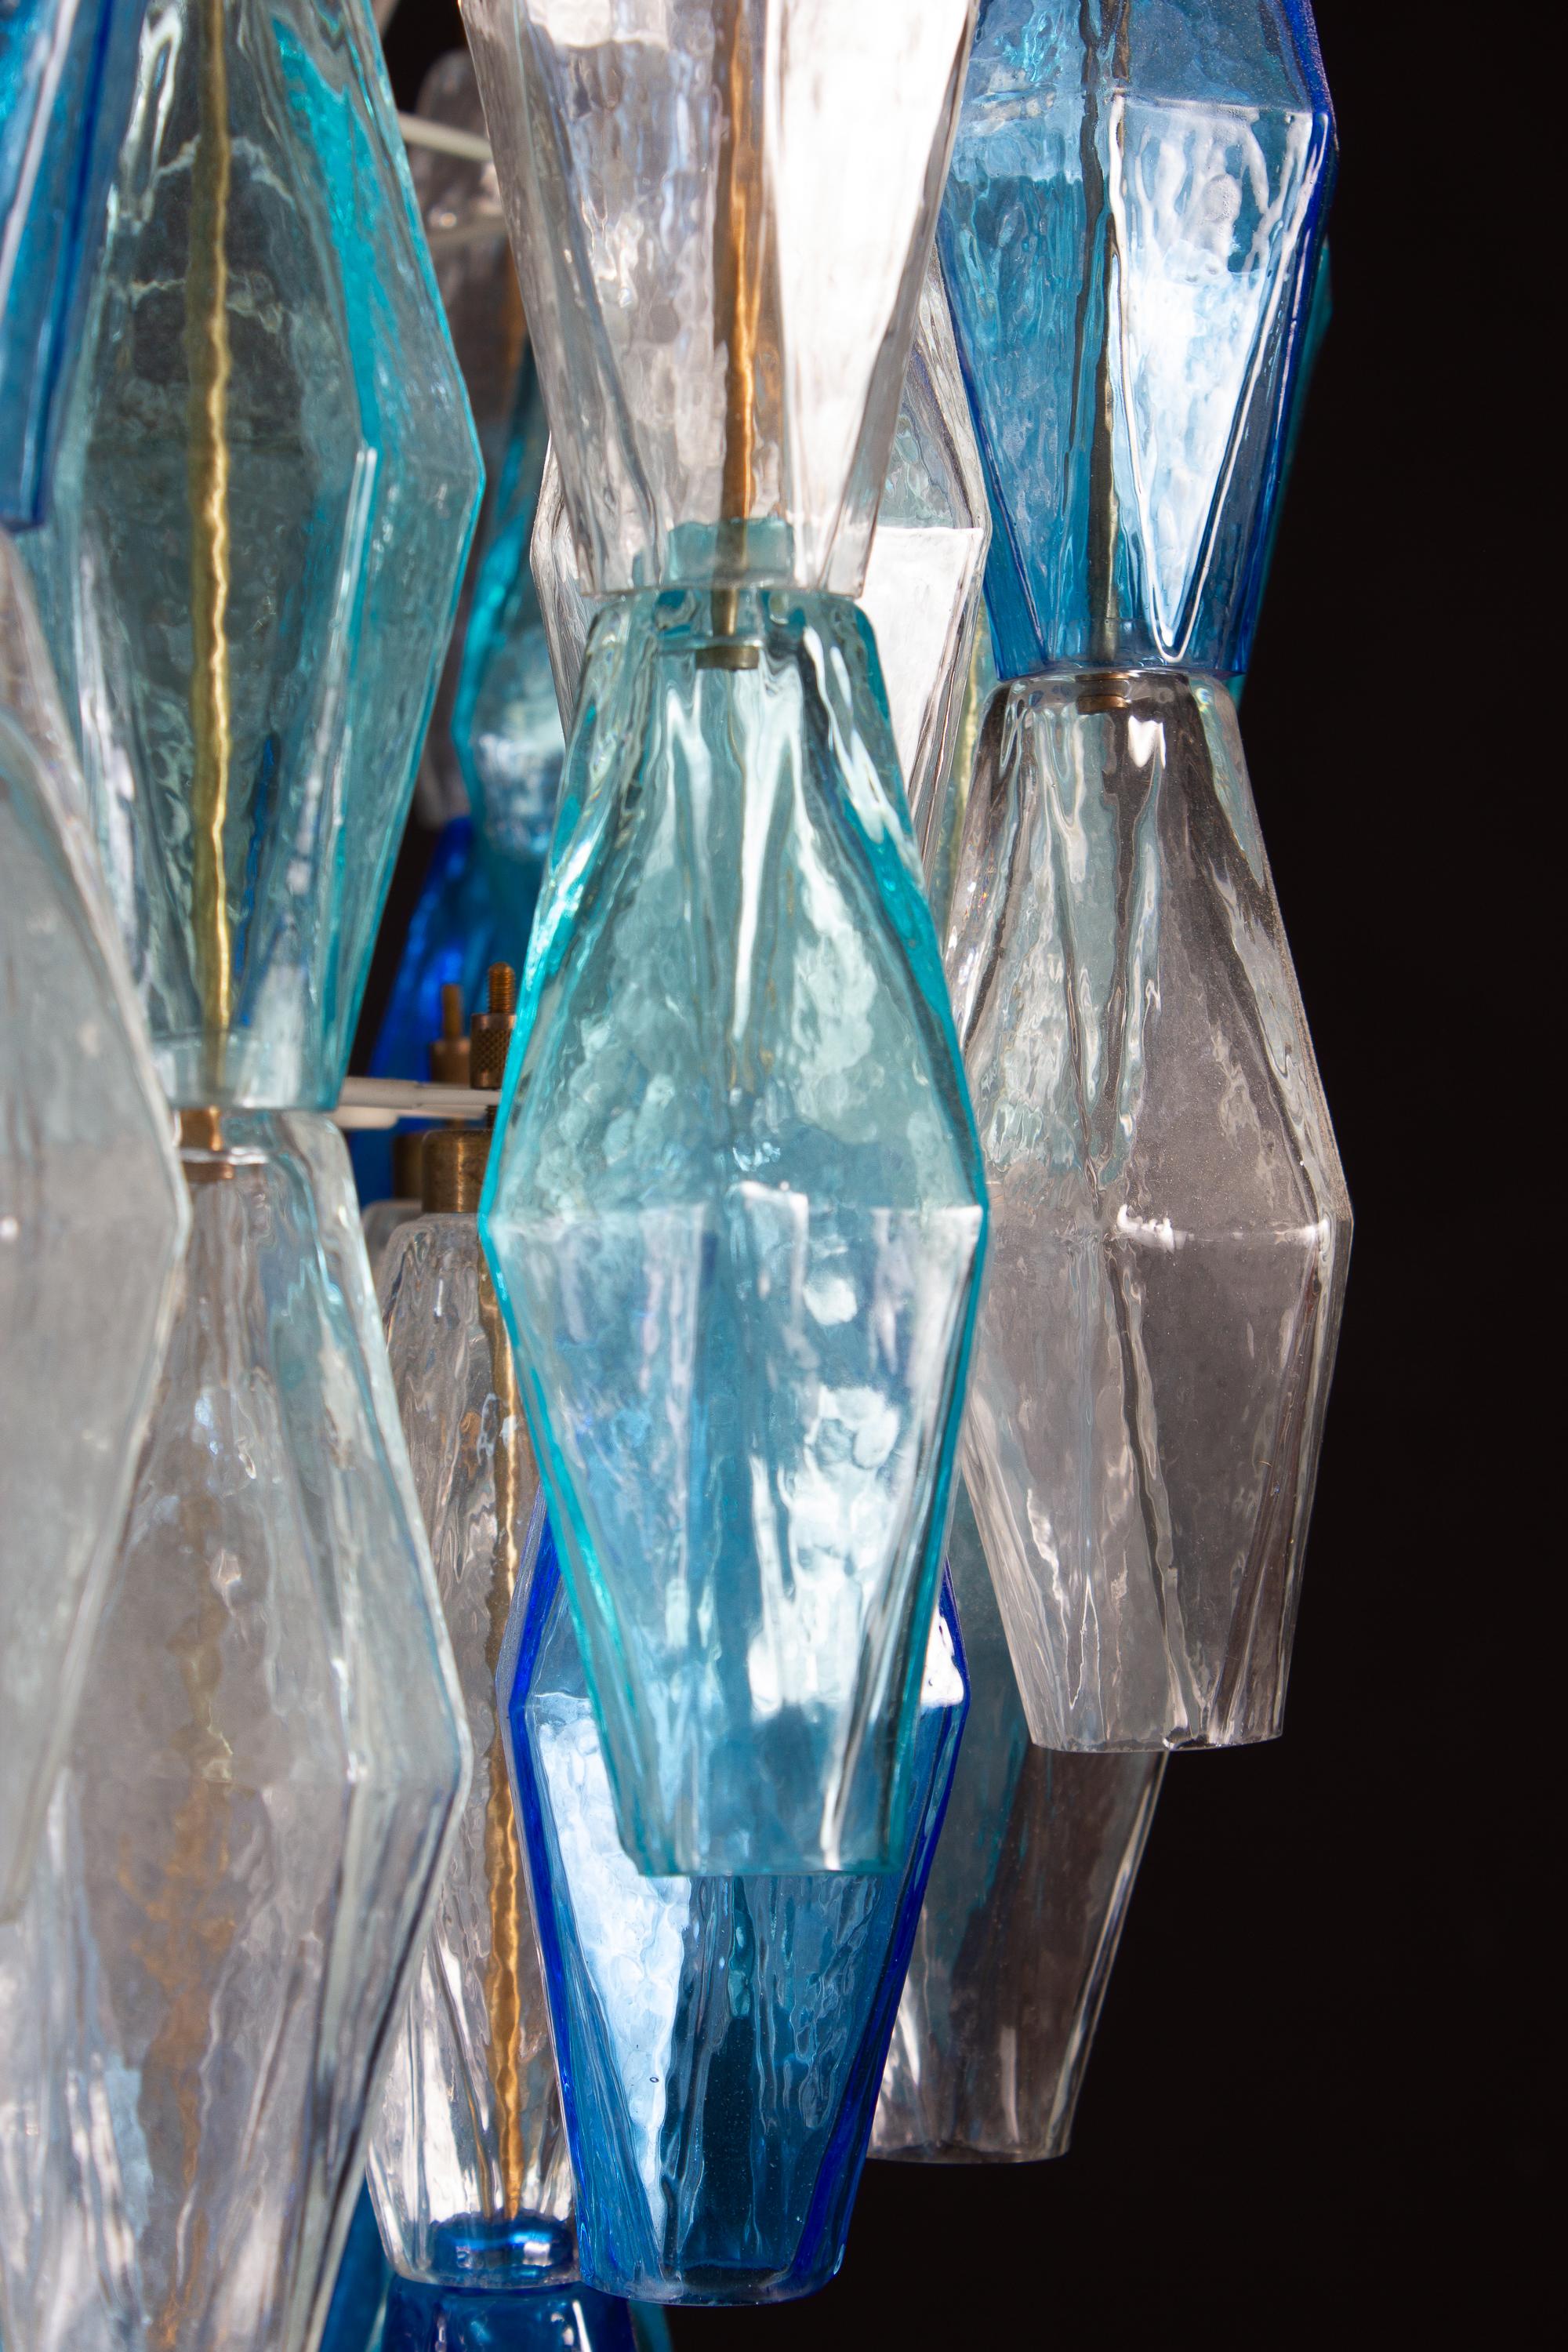 Dieses fantastische Paar Kronleuchter besteht aus ca. 200 farbigem Poliedri-Glas aus Murano.
Saphir Farbvariation mit himmlischen und Aquamarin kostbare Poliedri.
Maße: Höhe ohne Kette und Baldachin 88 cm (35inches). Mit Kette und Baldachin cm 130